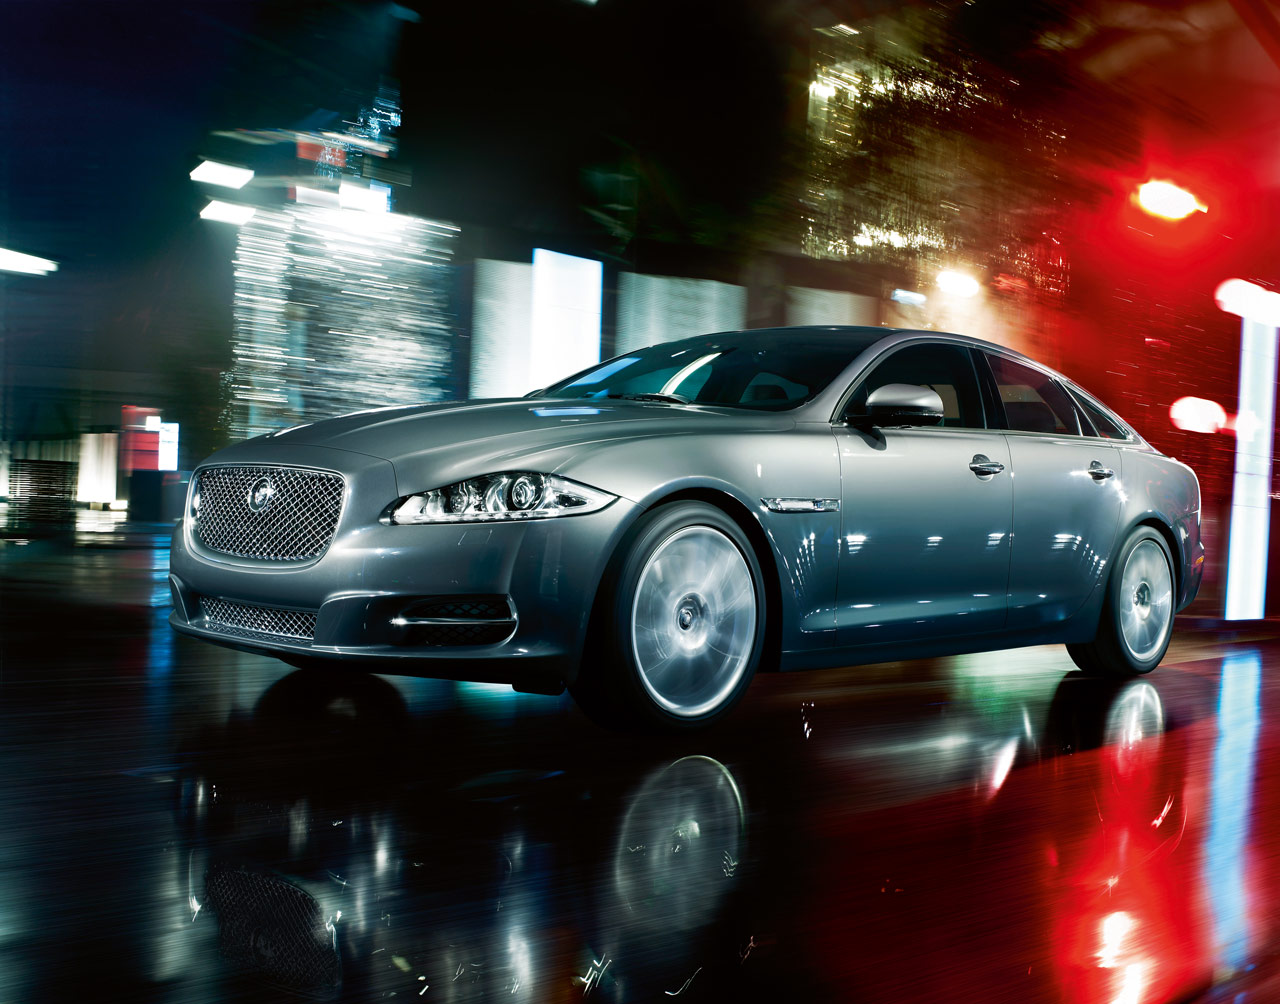 2011 Jaguar XJ Sentinel Review : Car Review and Wallpaper: 2011 Jaguar ...